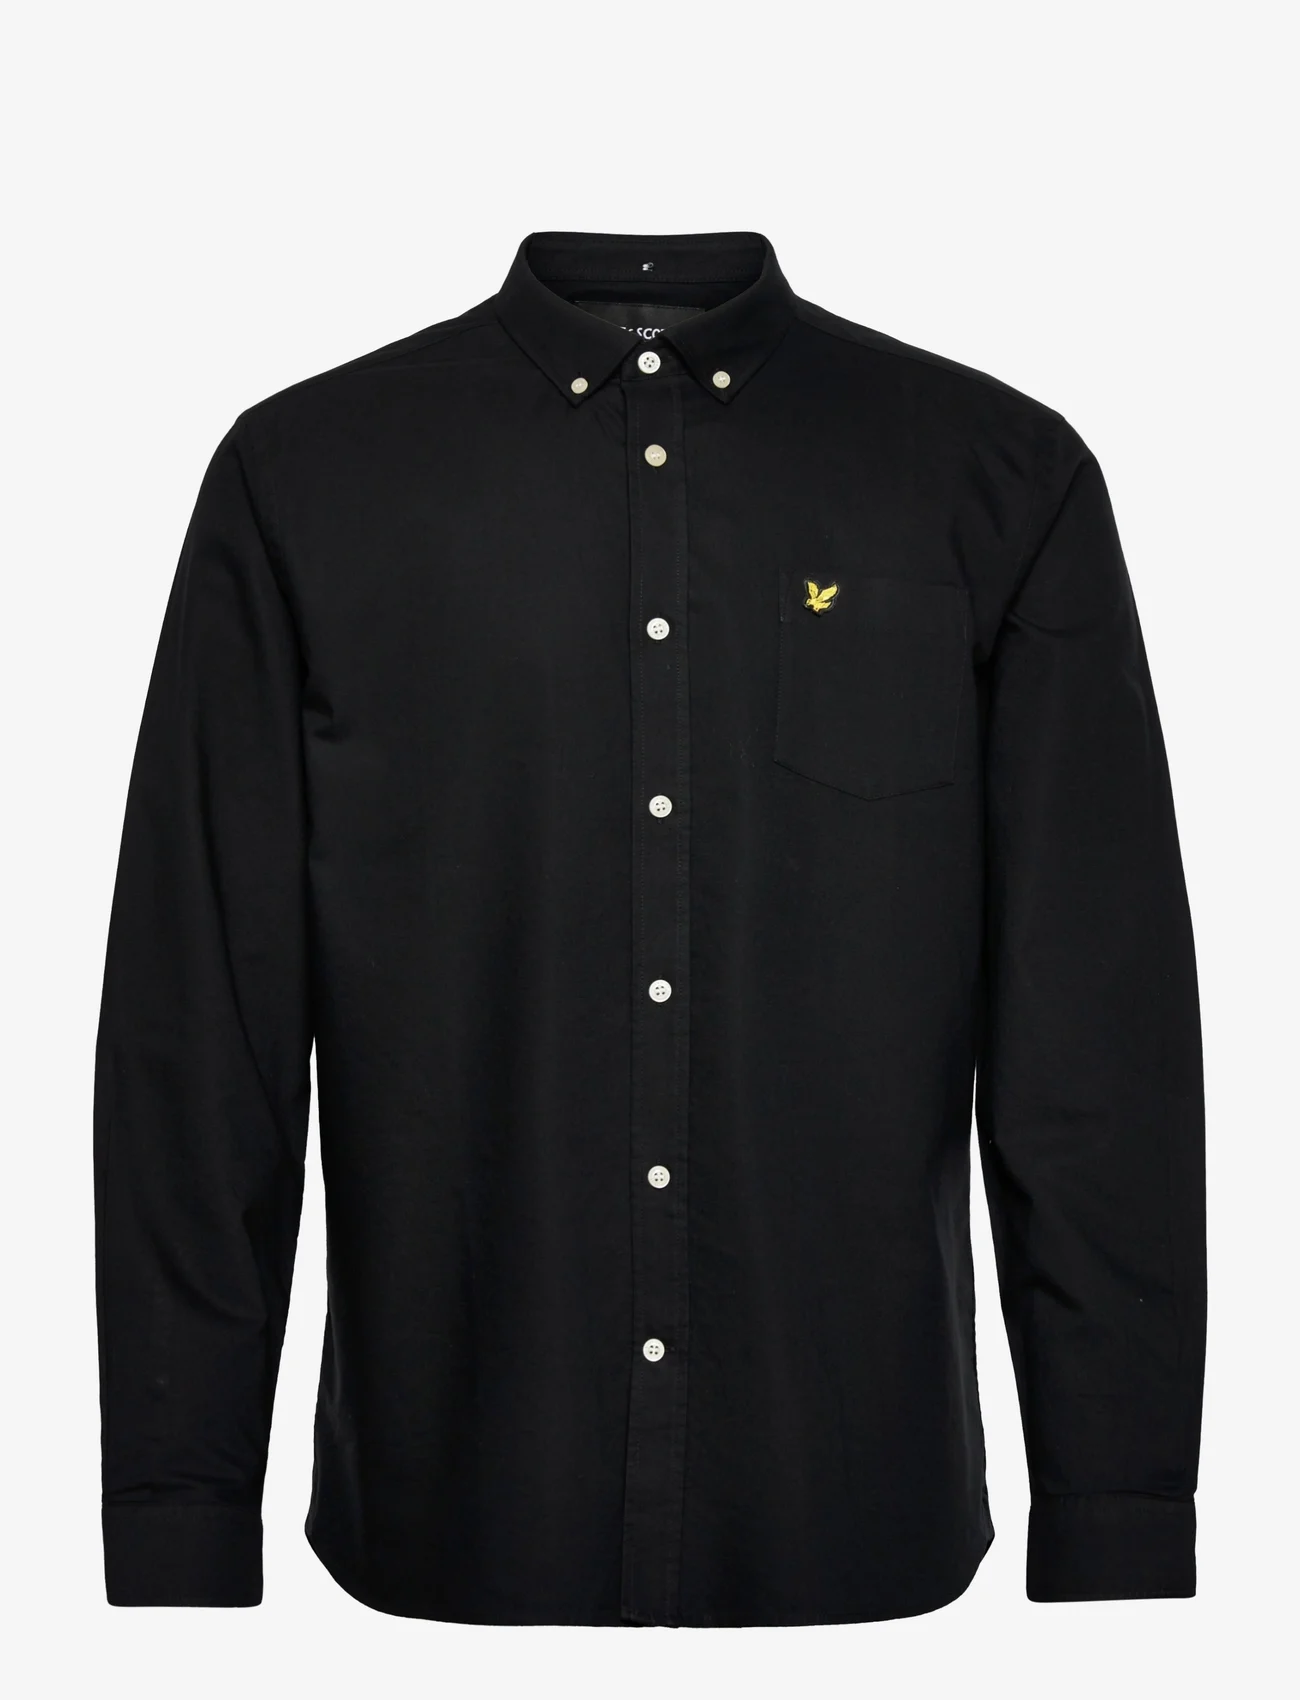 Lyle & Scott - Regular Fit Light Weight Oxford Shirt - oxford shirts - jet black - 0